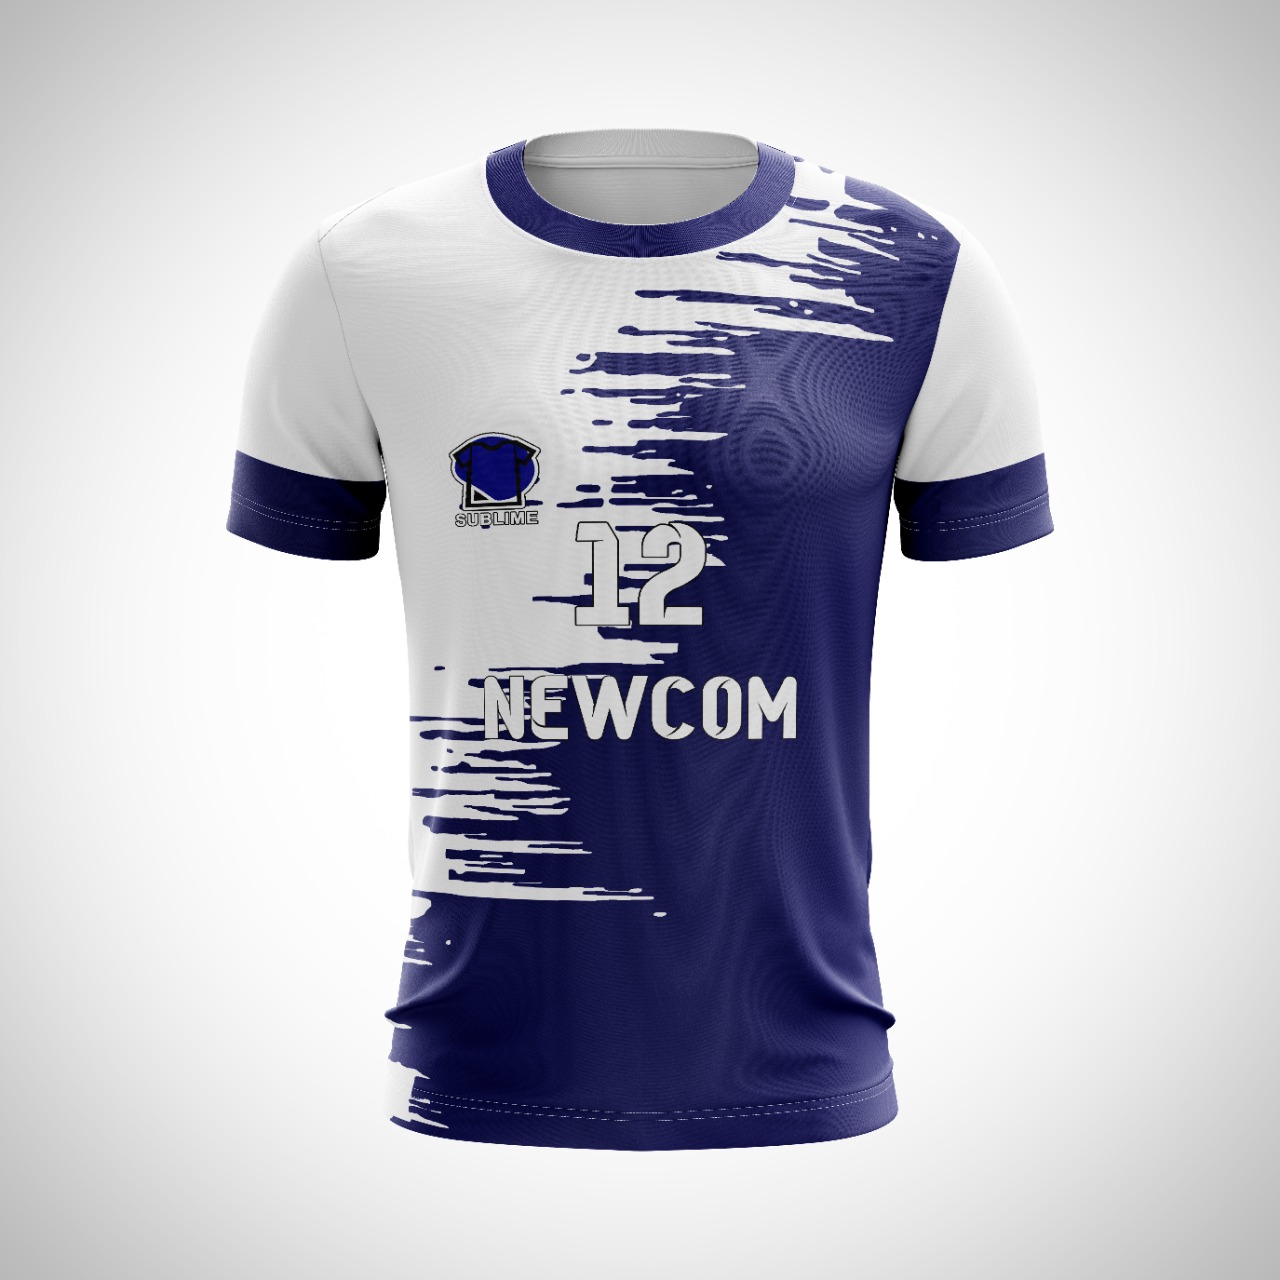 Camiseta fútbol personalizada – Sublime